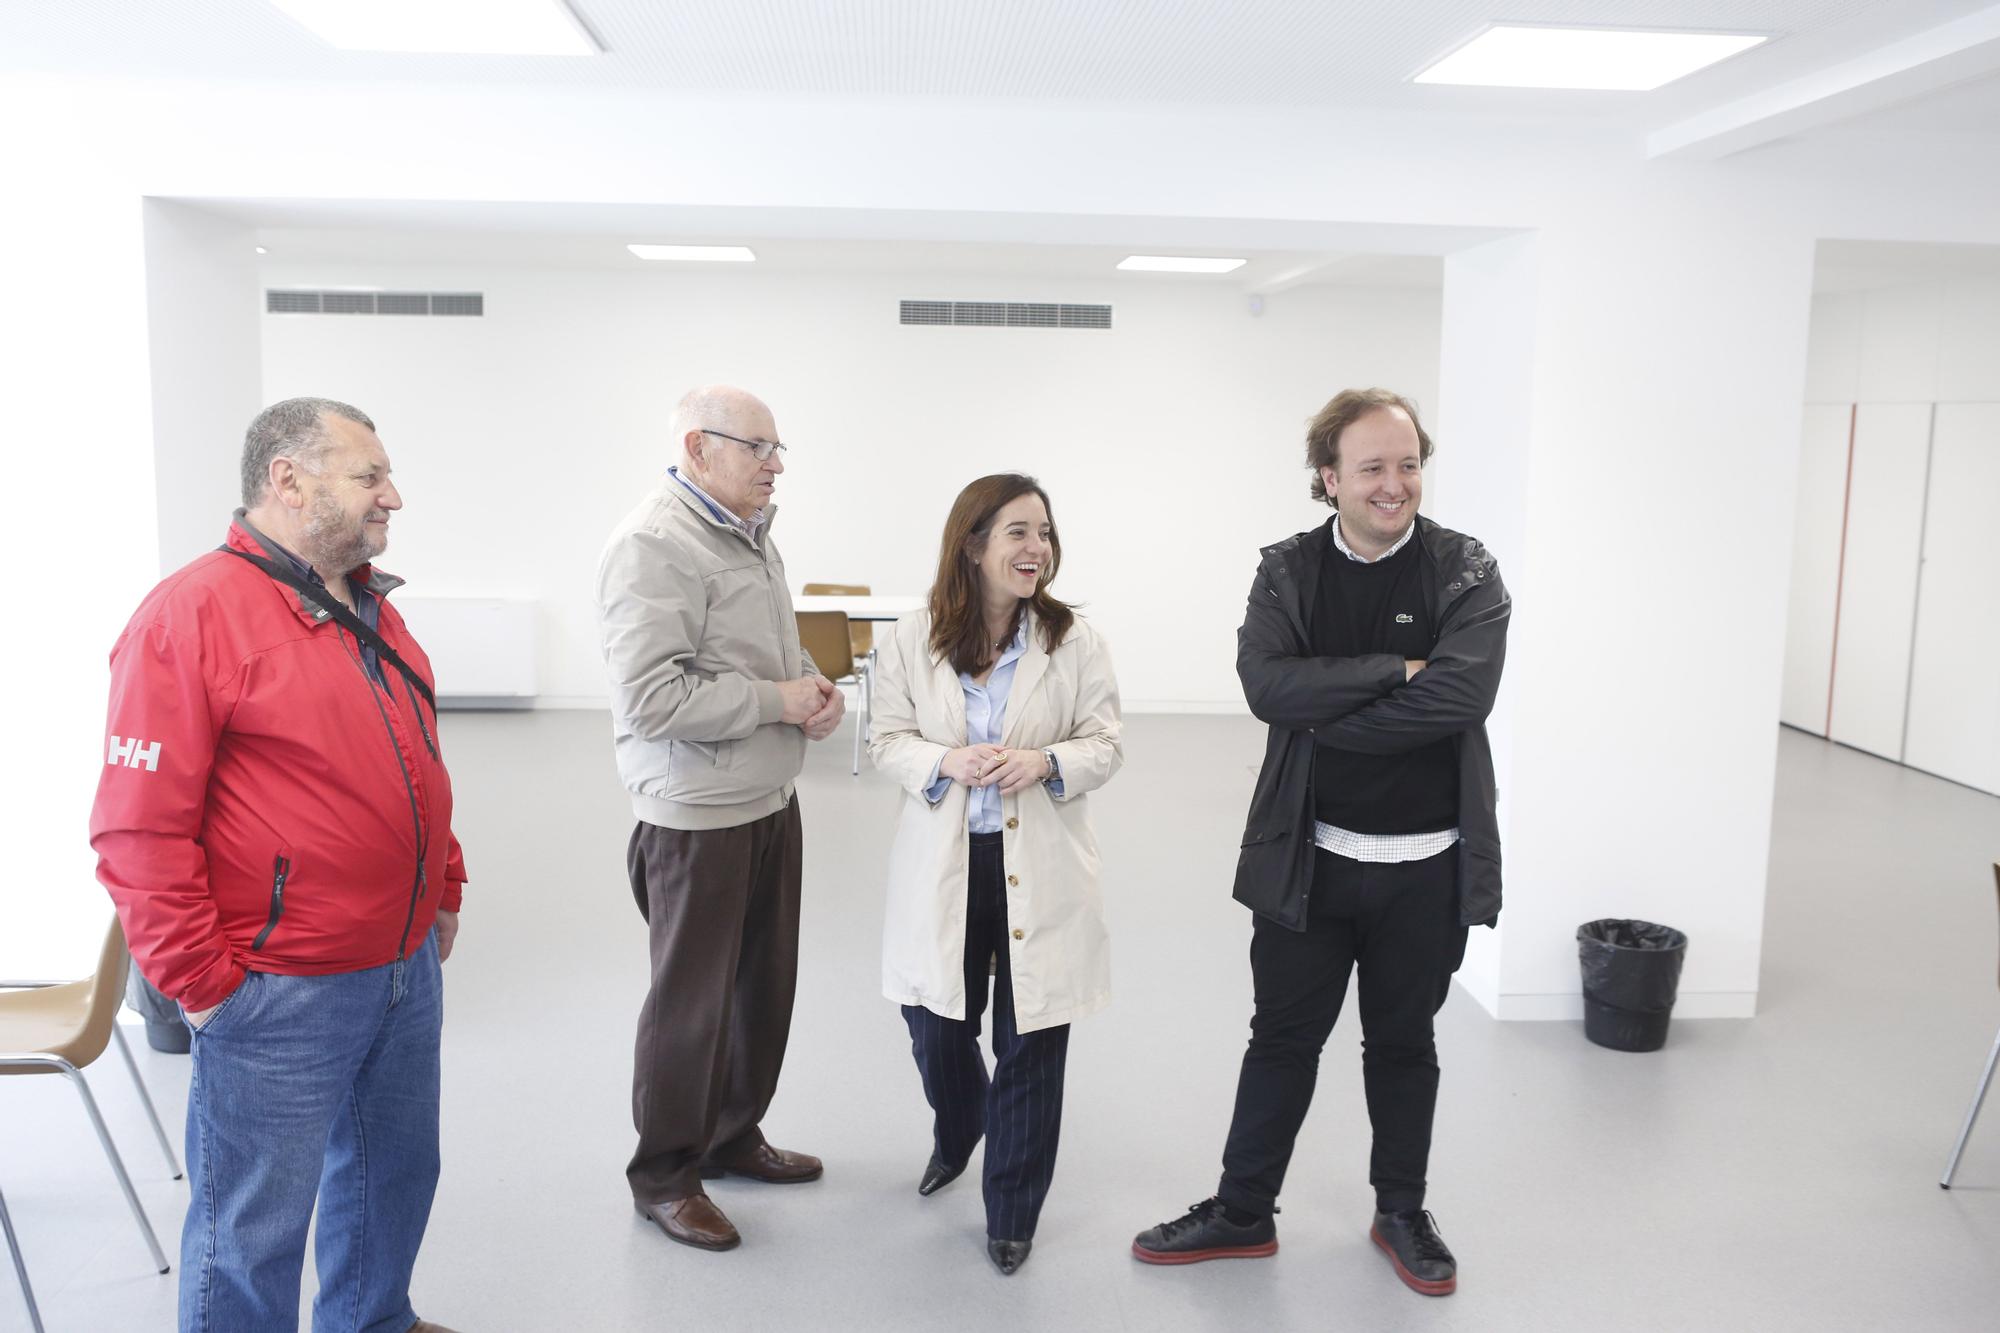 Visita a las instalaciones del centro García Sabell tras su reforma